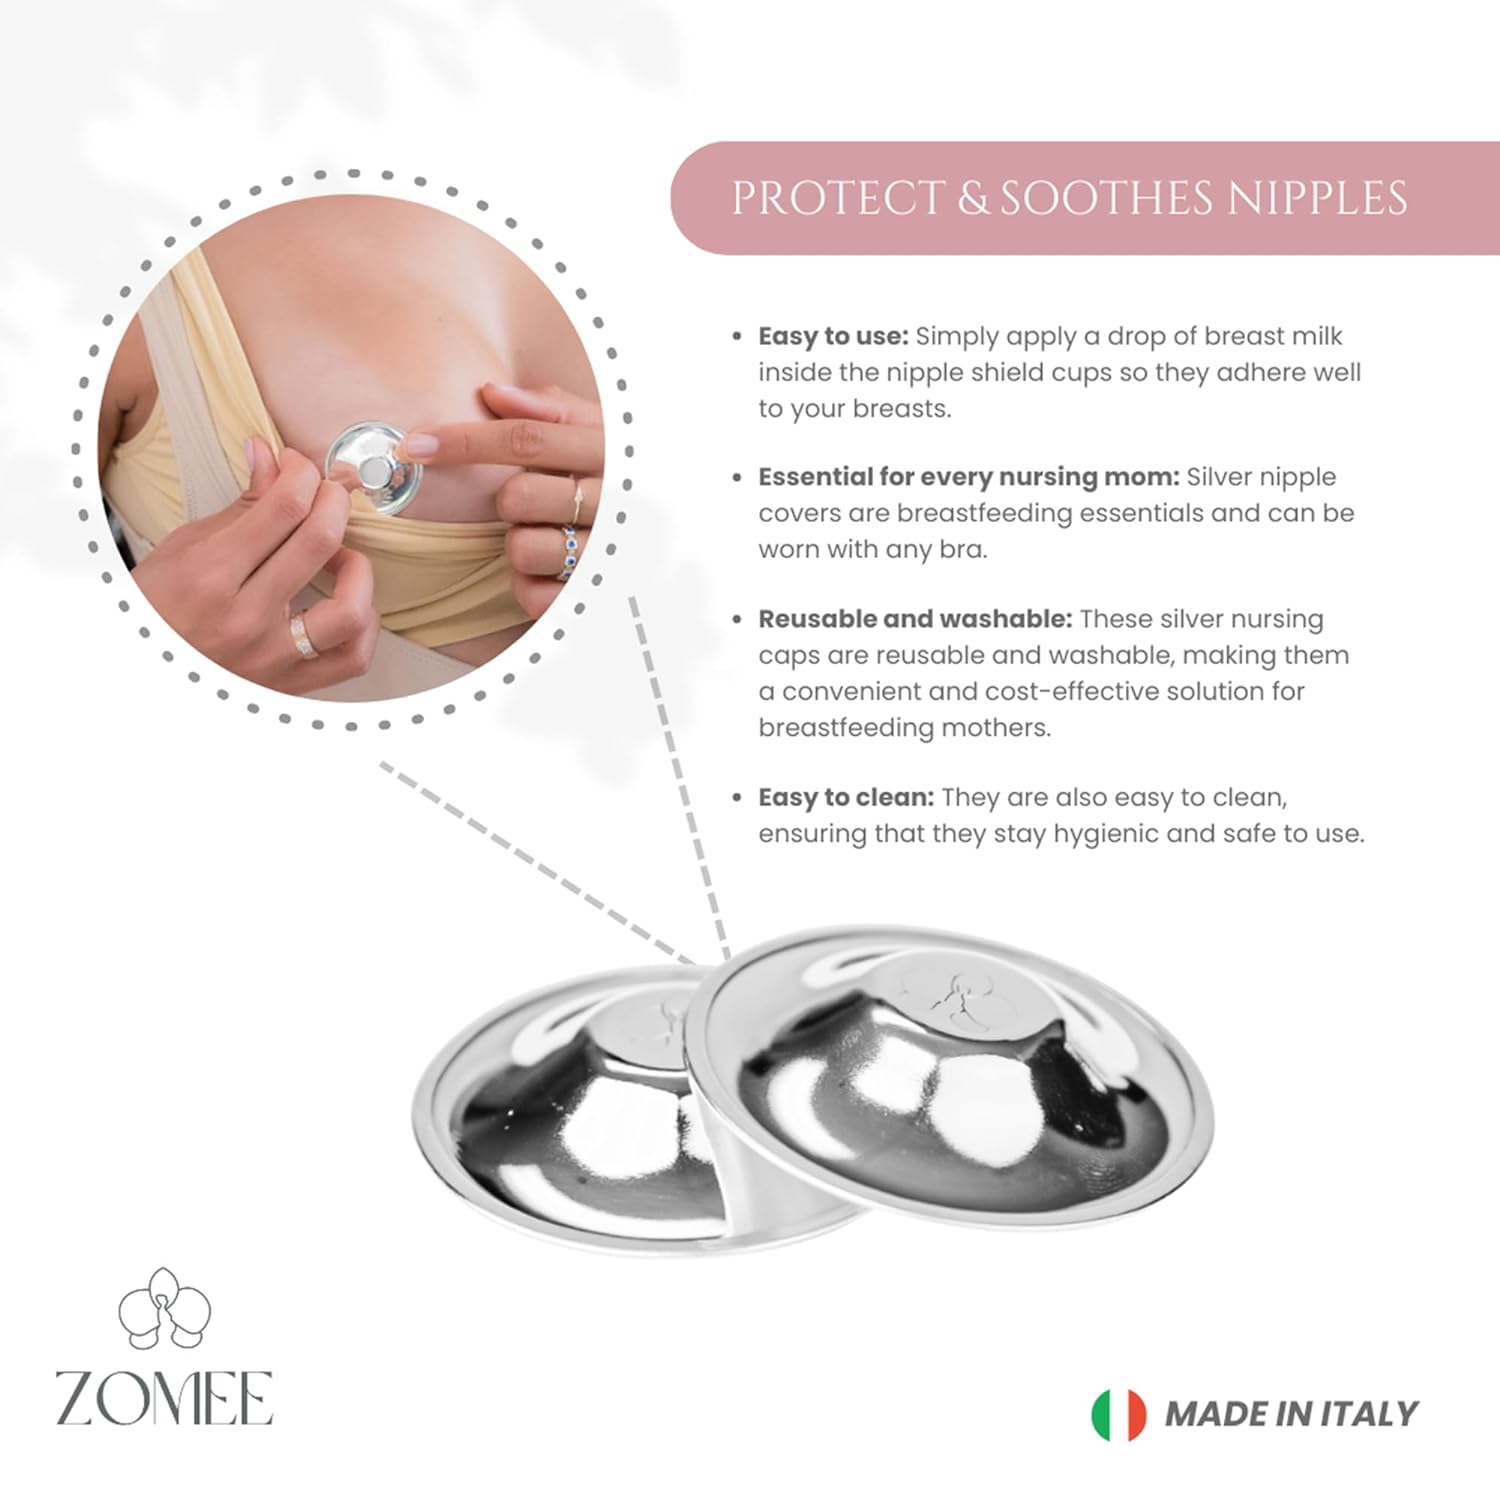 Zomee Original Silver Copas de Lactancia - Pezoneras para la Lactancia del Recién Nacido - Sacaleches Zomee